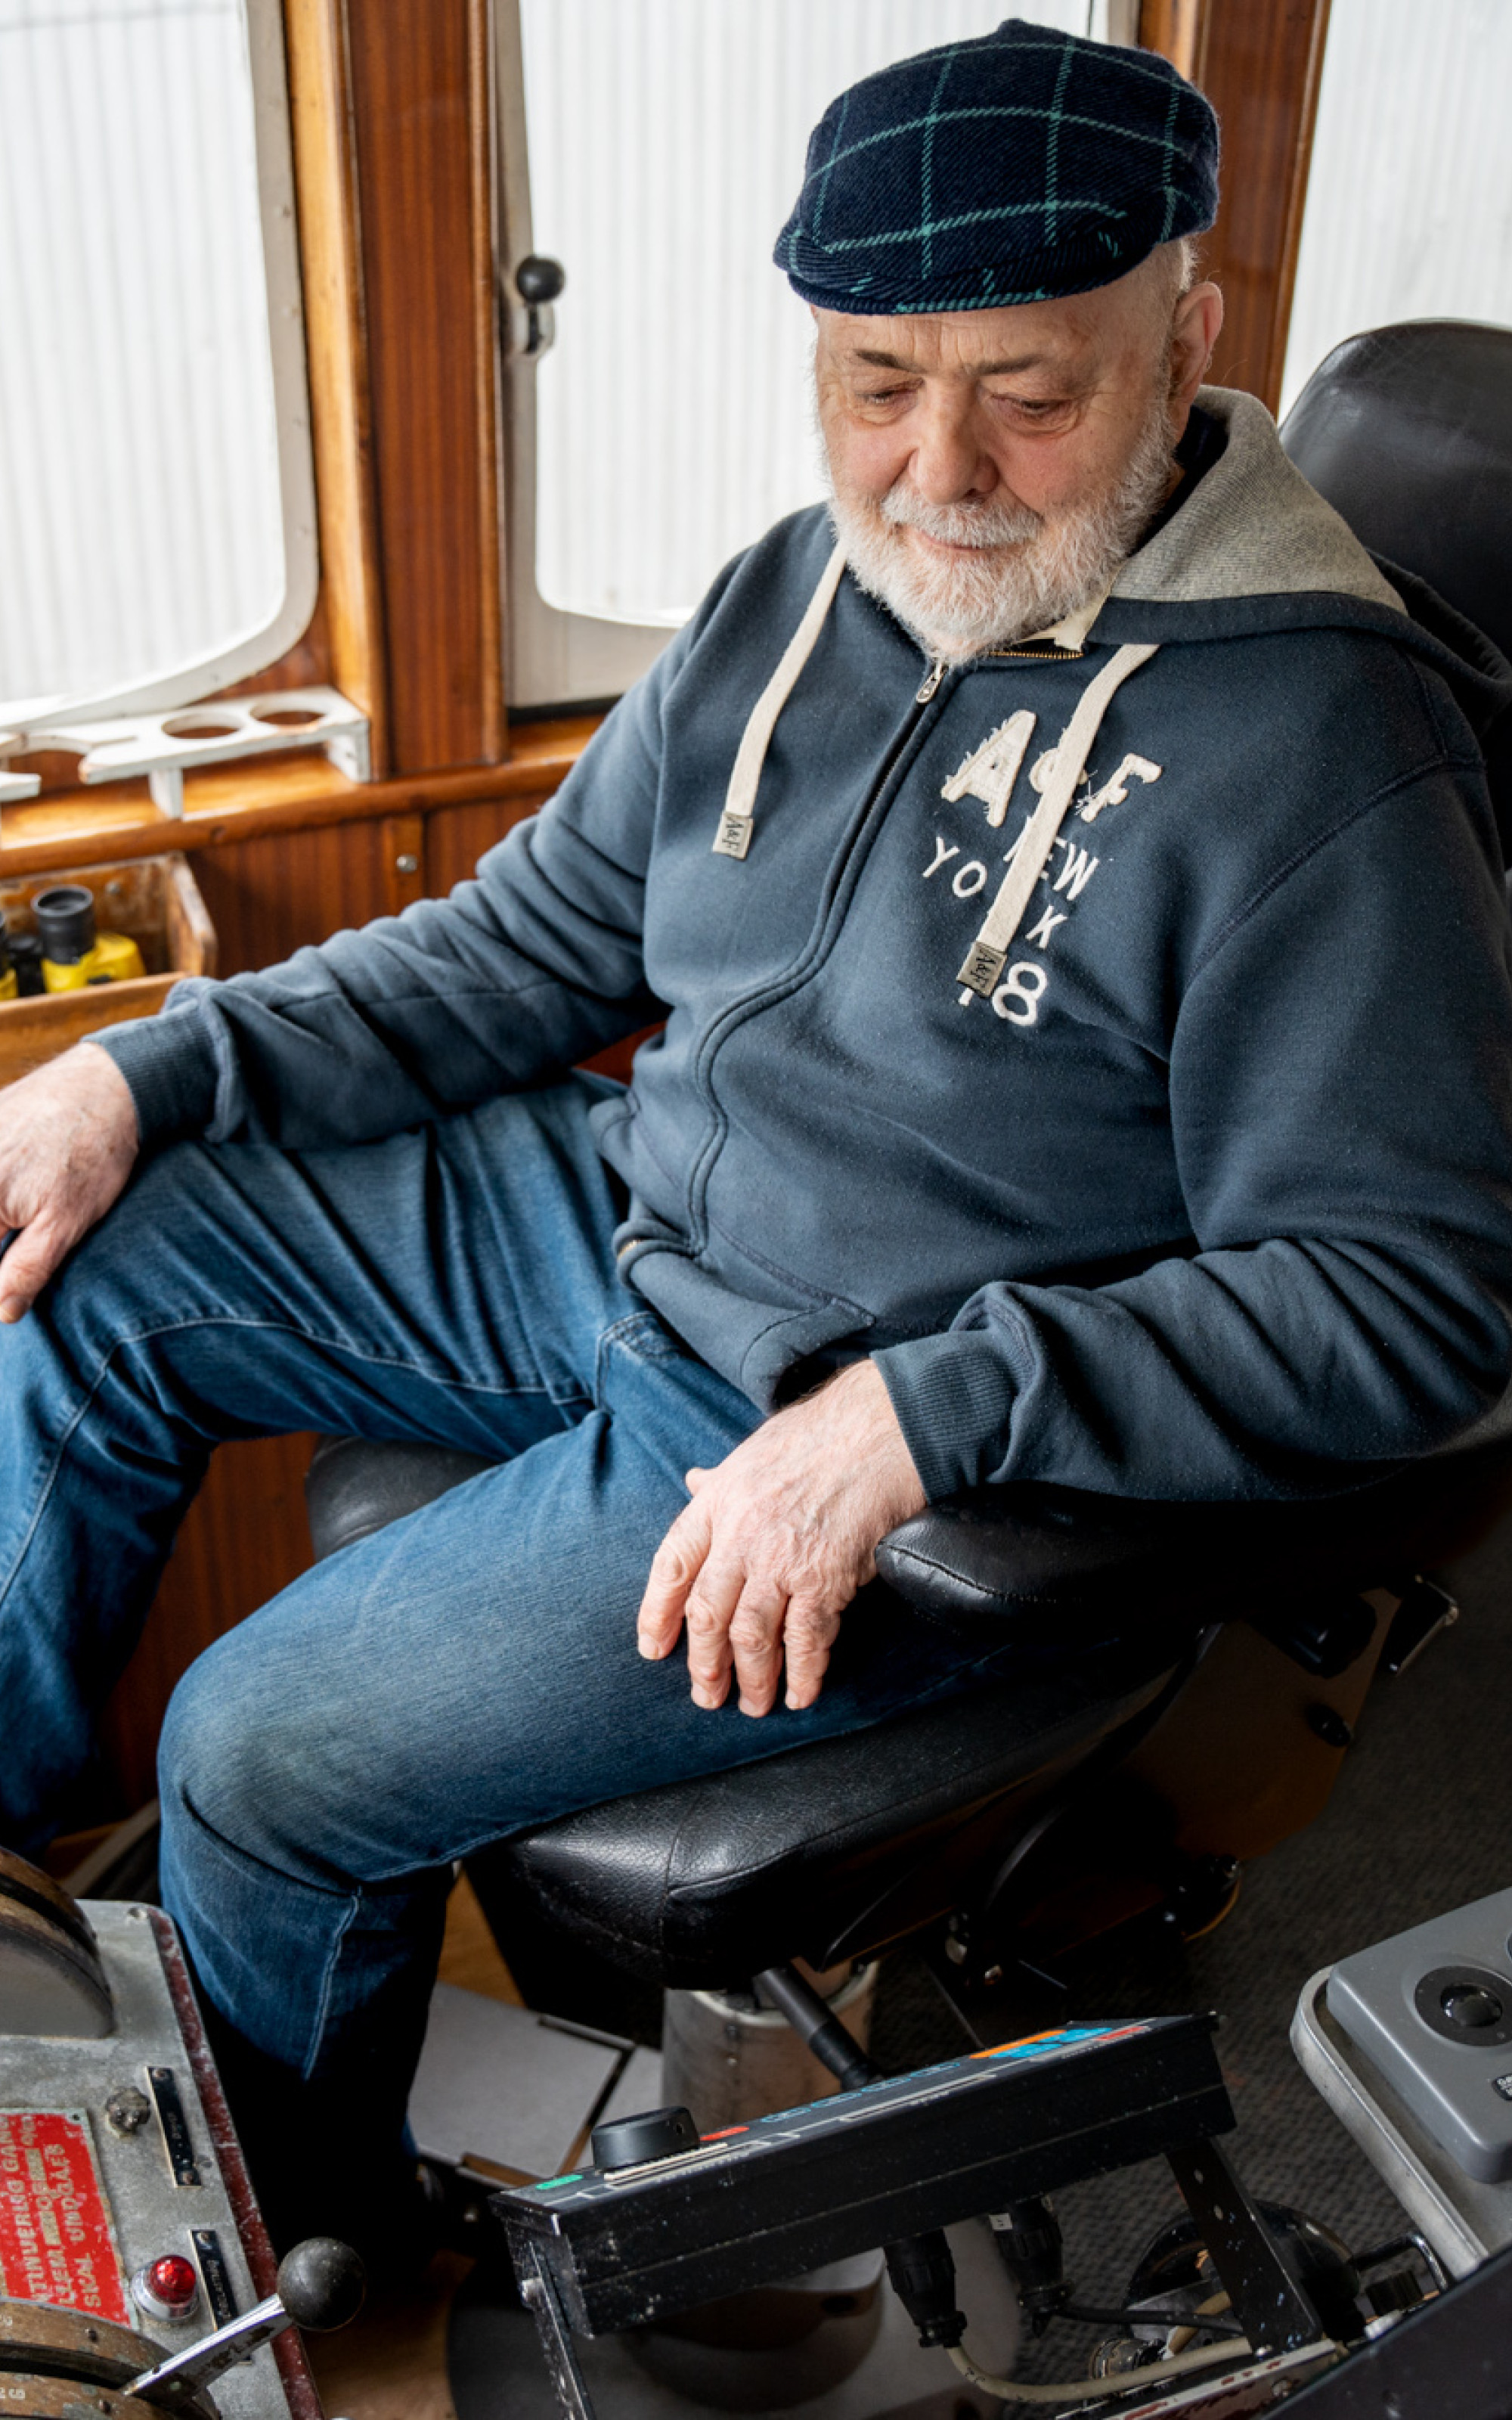 Eldre mann sit i pilotstolen på båten, med mykje instrument og spakar rundt seg.